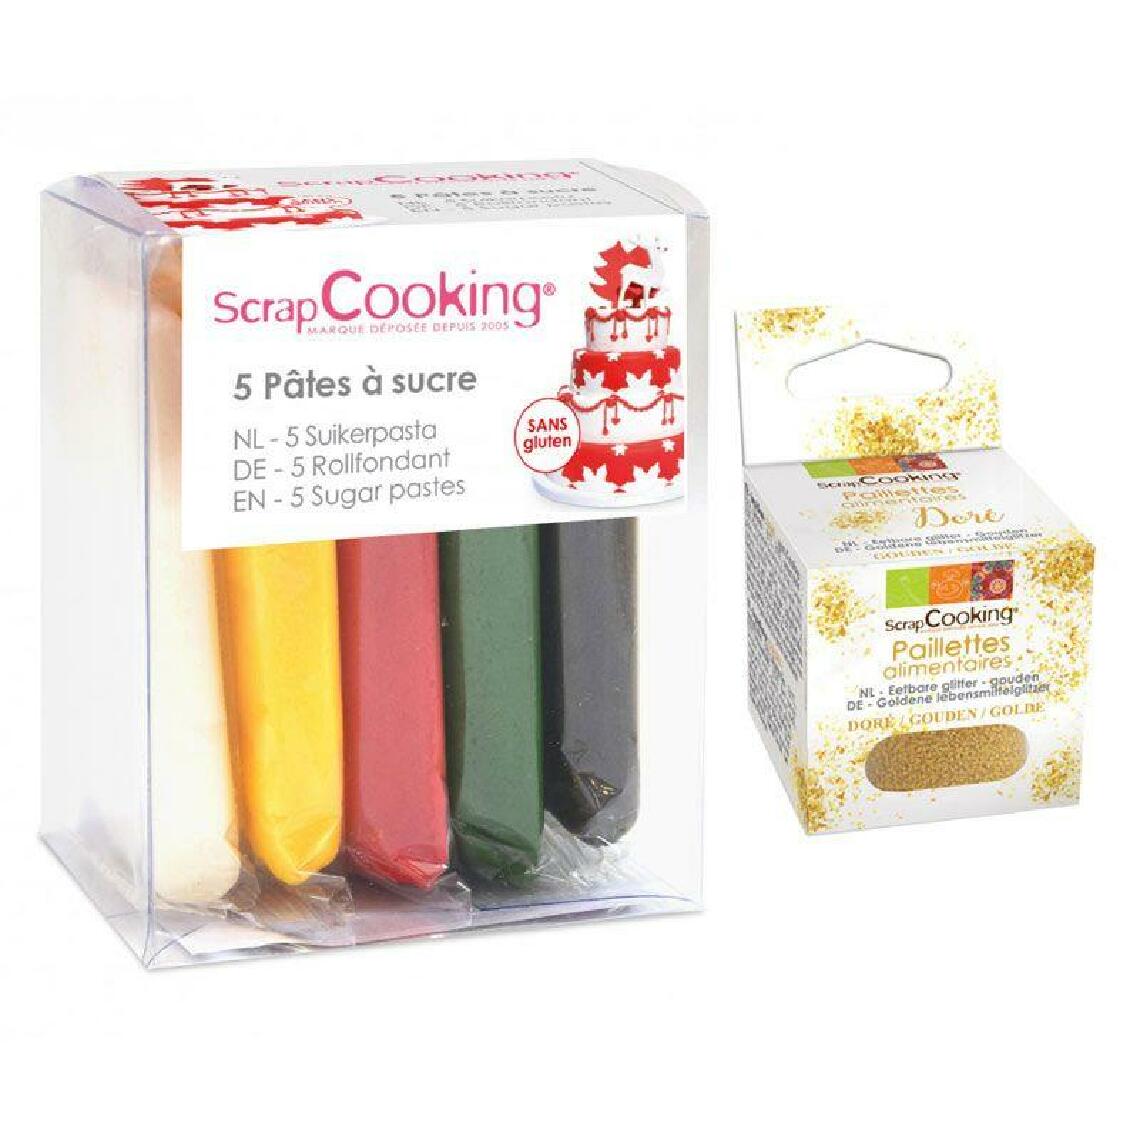 Scrapcooking - 5 pâtes à sucre de Noël + paillettes dorées - Kits créatifs